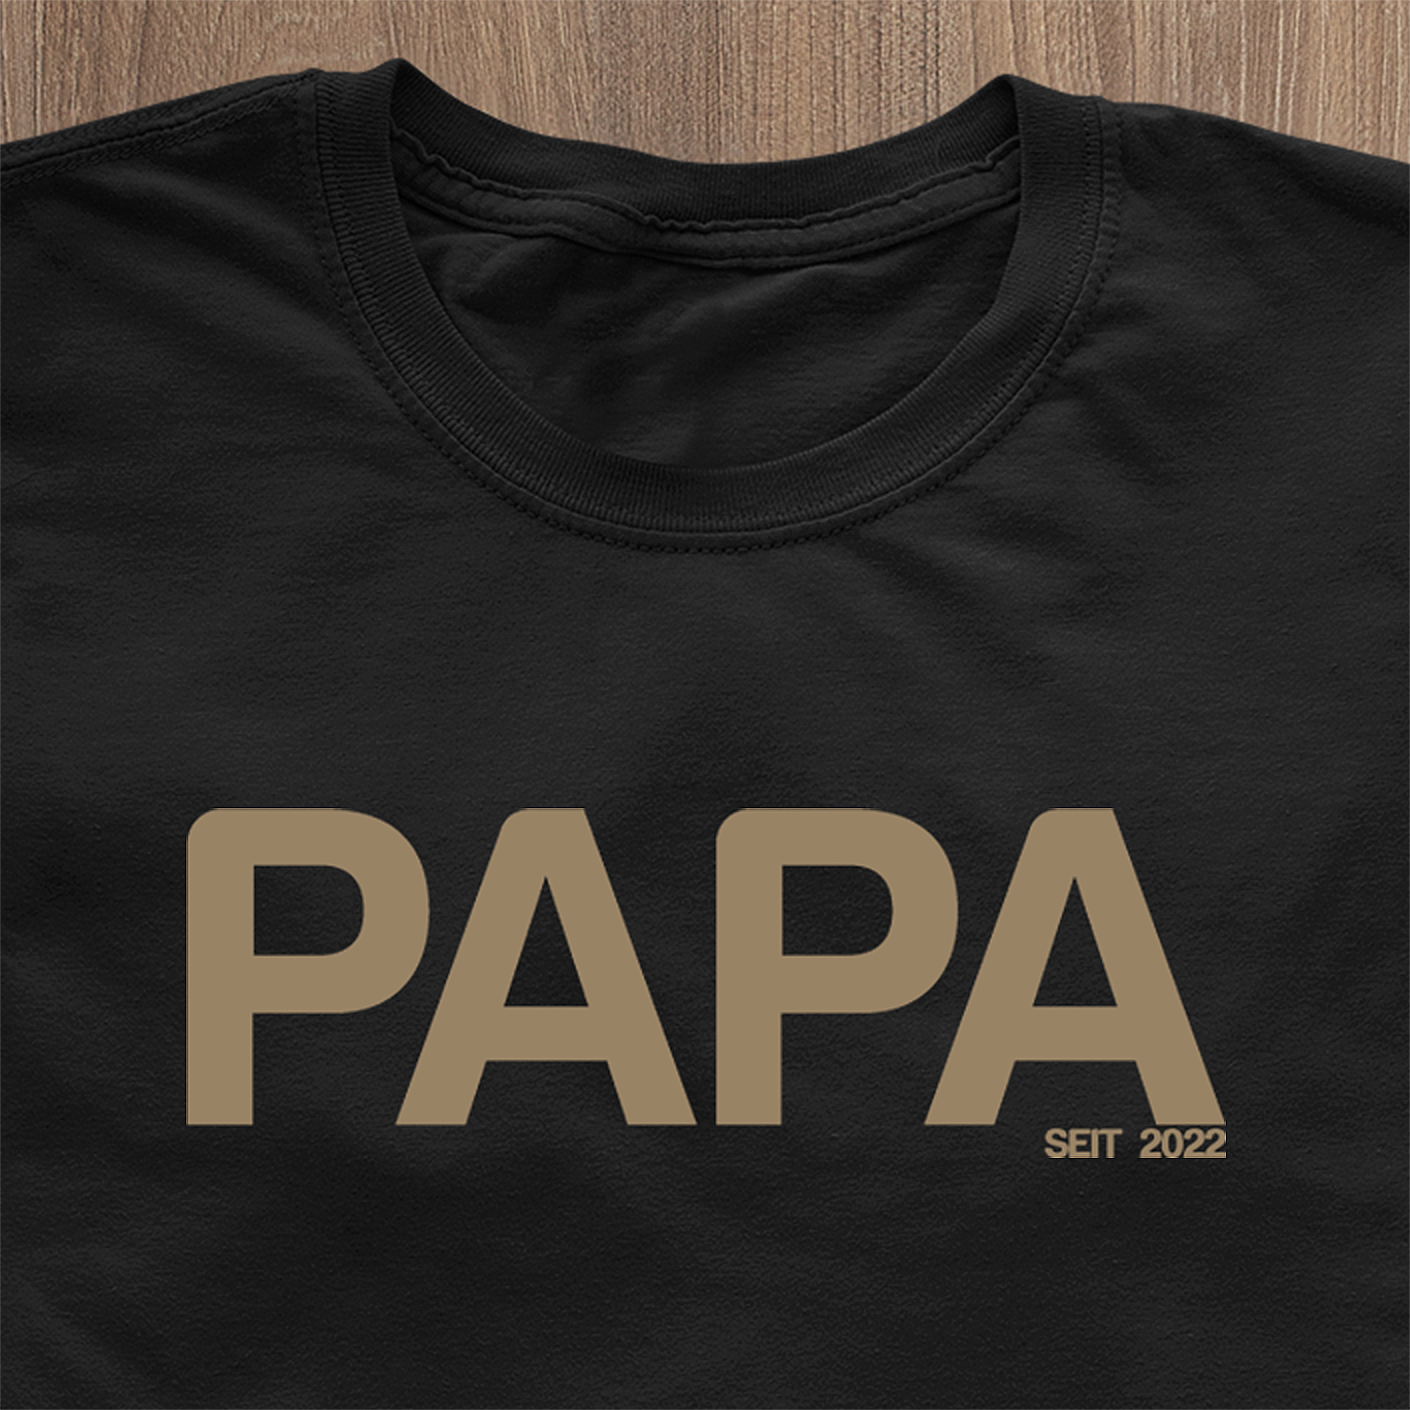 PAPA SEIT... T-Shirt Modern Edition Navy - Datum personaliséierbar